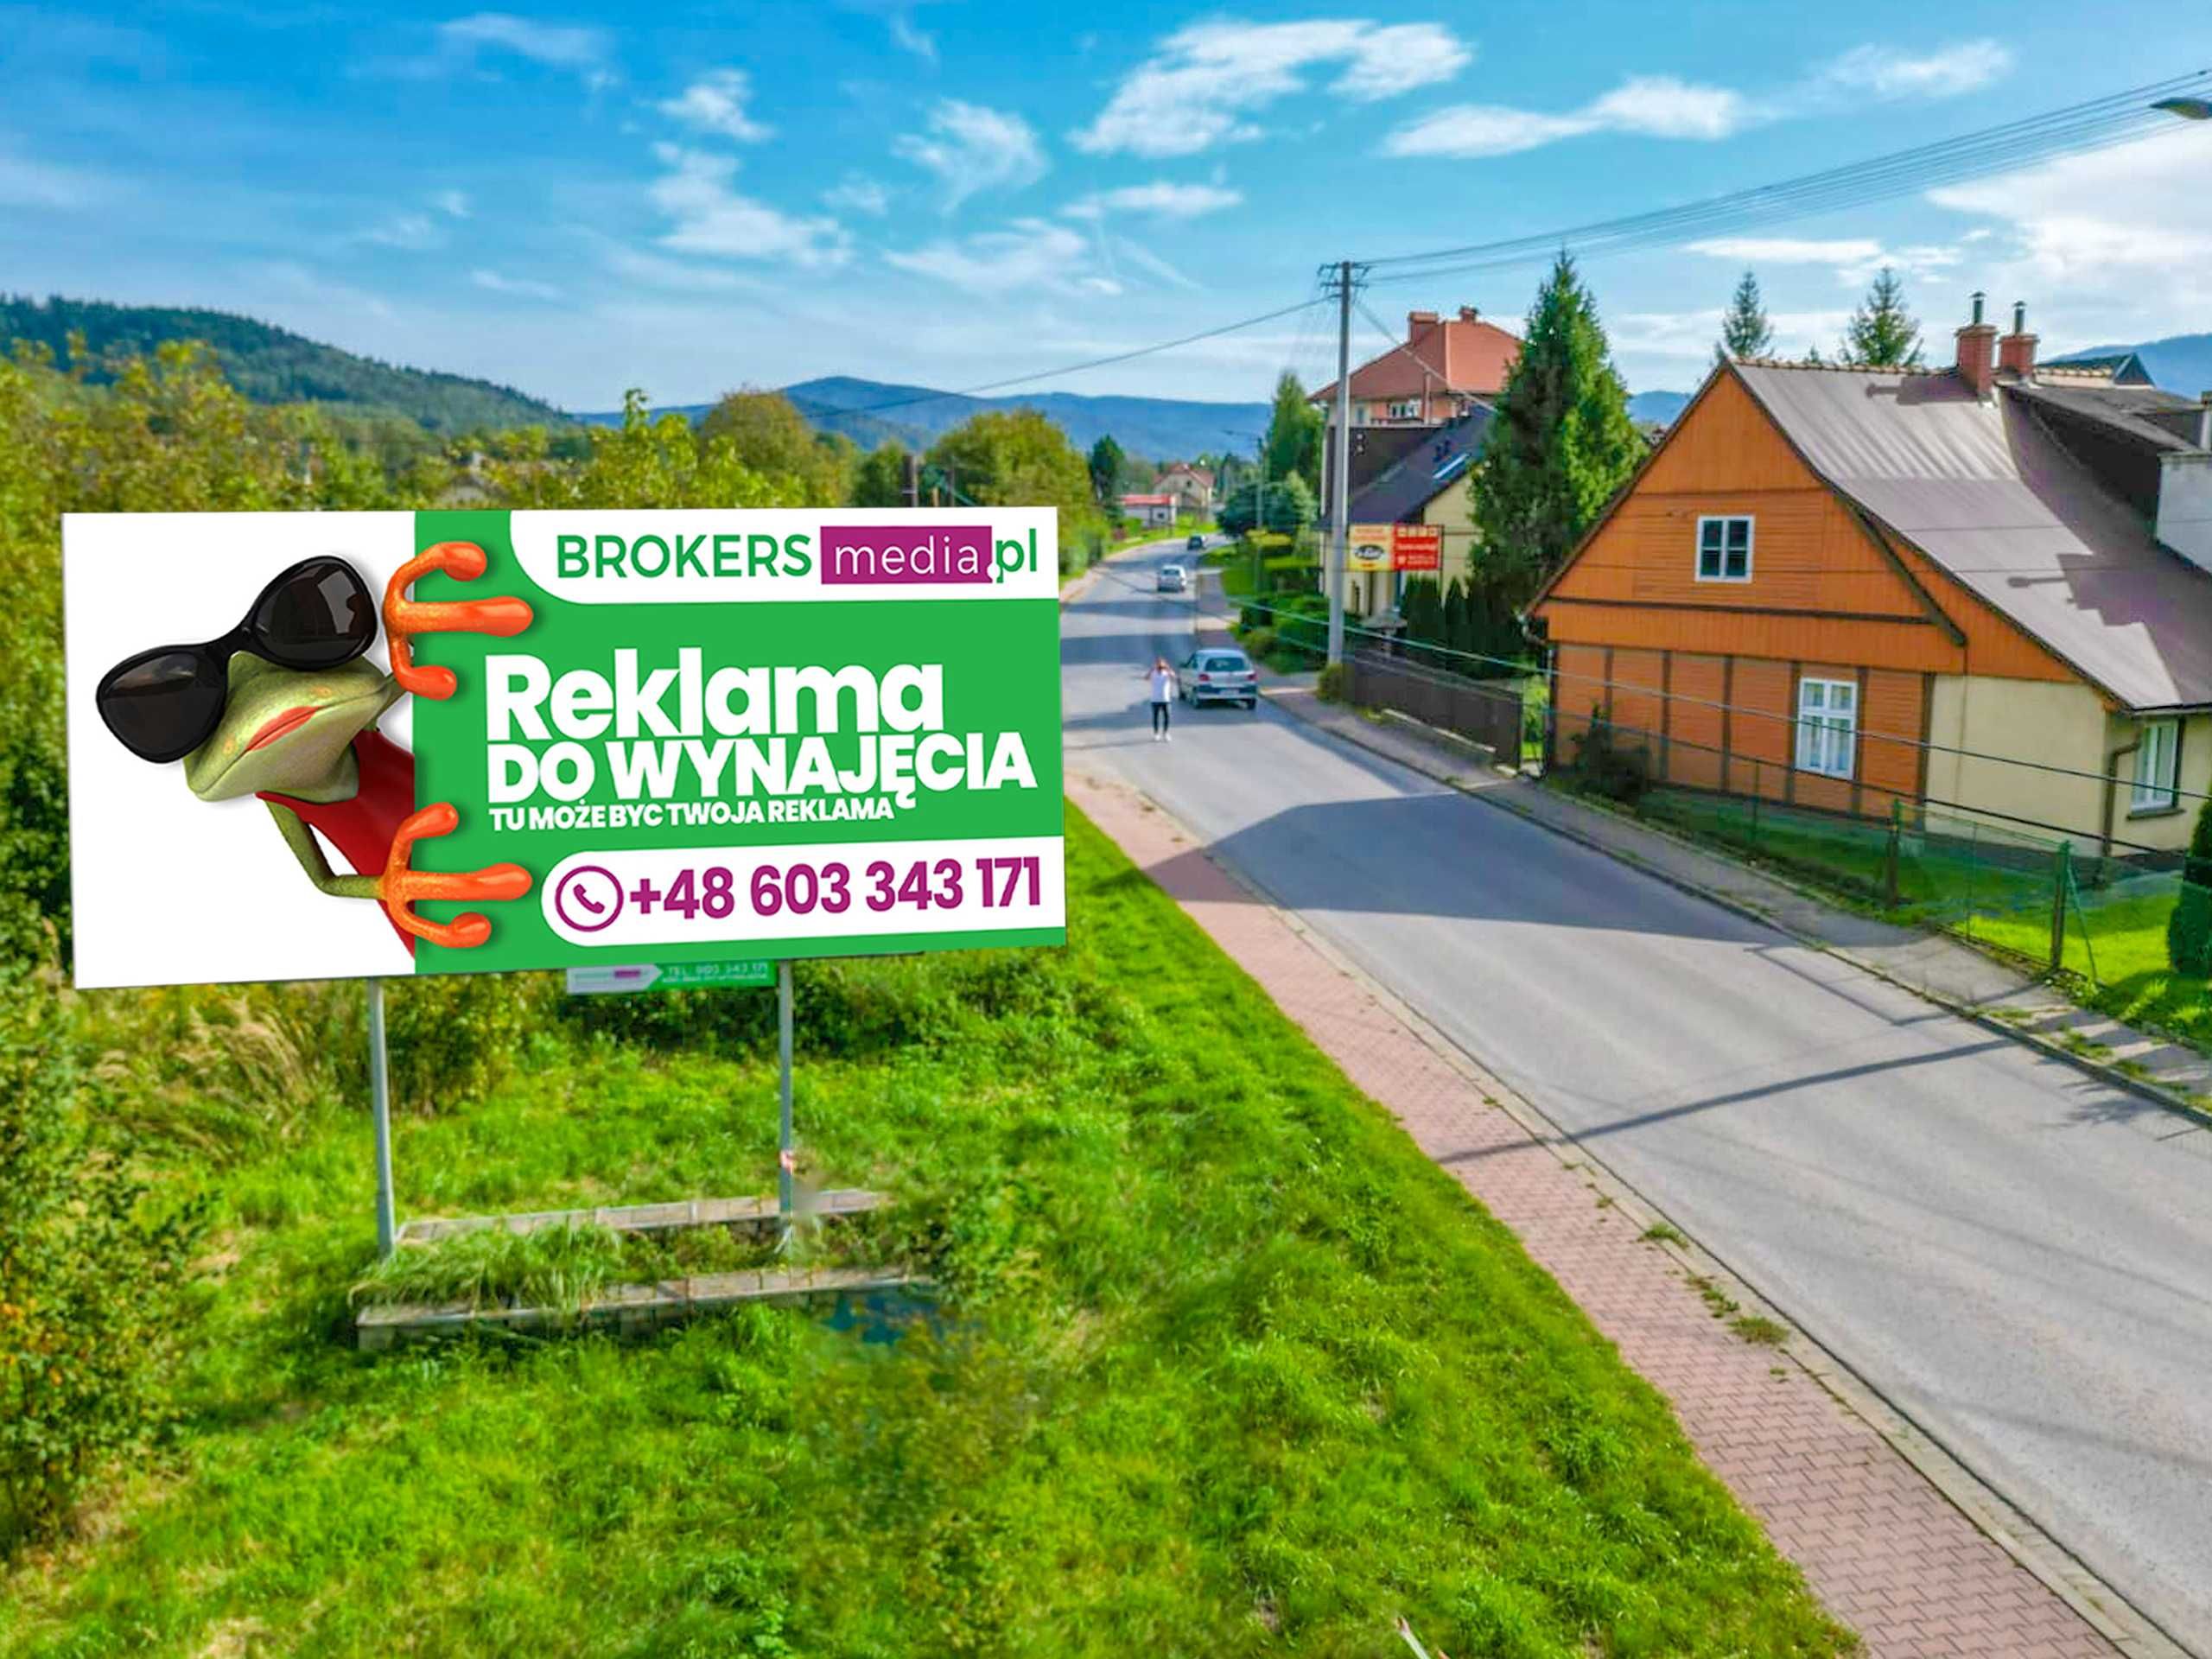 Billboard Reklama do wynajęcia Oświęcim, Andrychów, Wadowice, Chrzanów